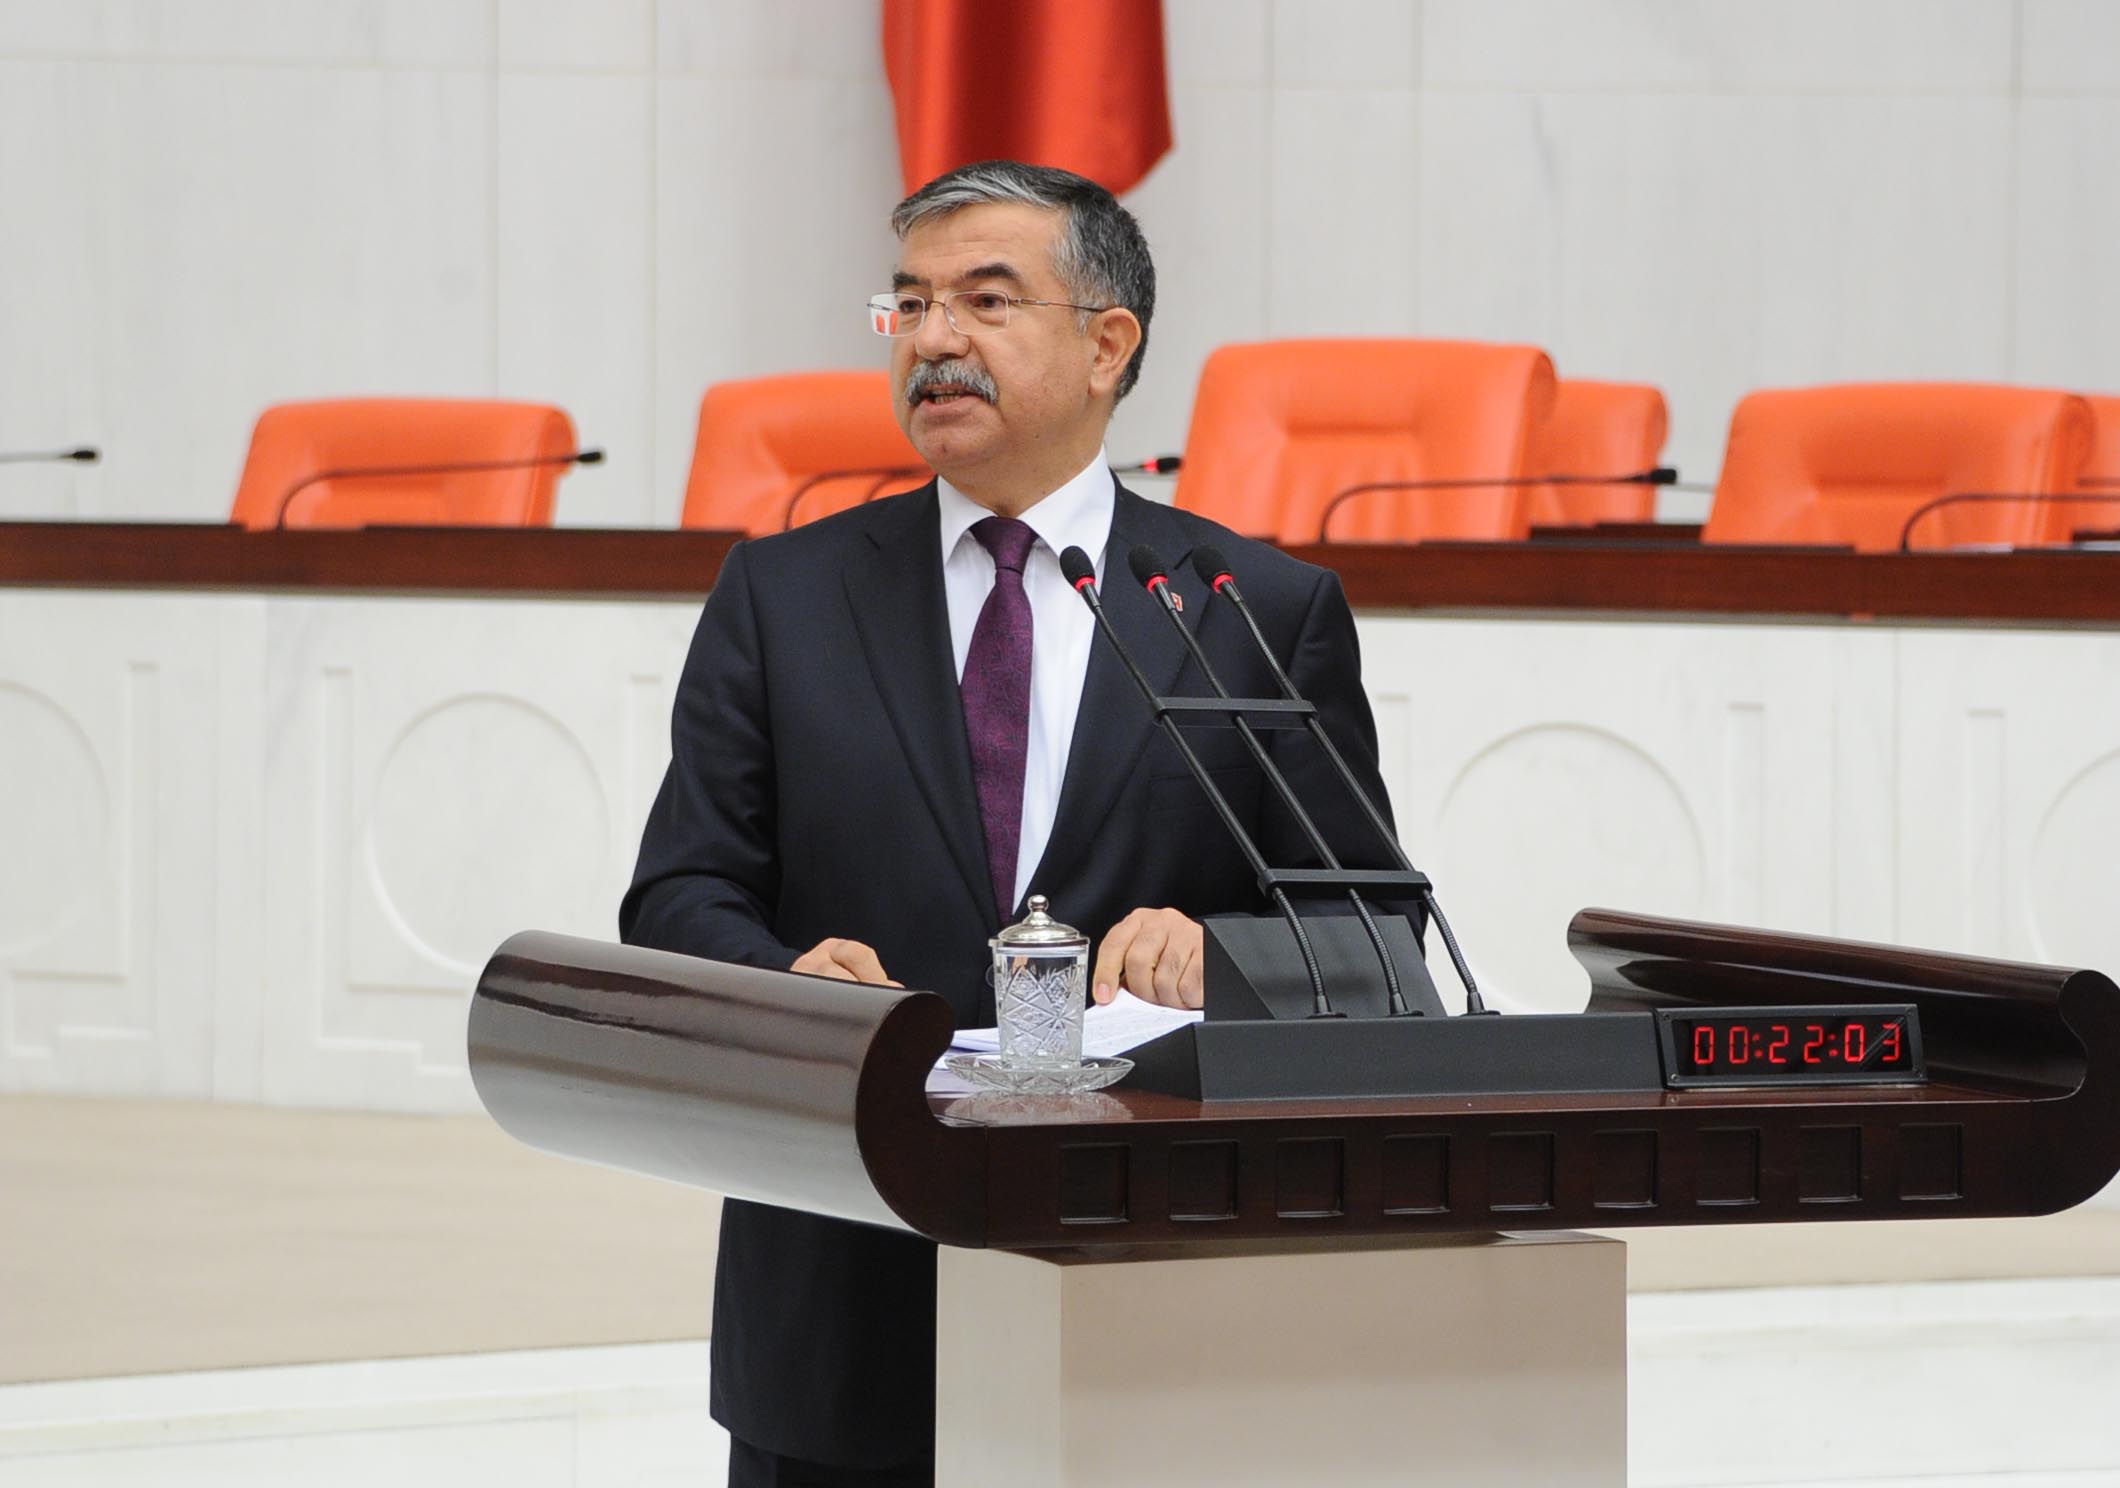 وزير الدفاع التركي: تركيا لم تتخلى عن سيادتها وتنظيم داعش خطر كبير